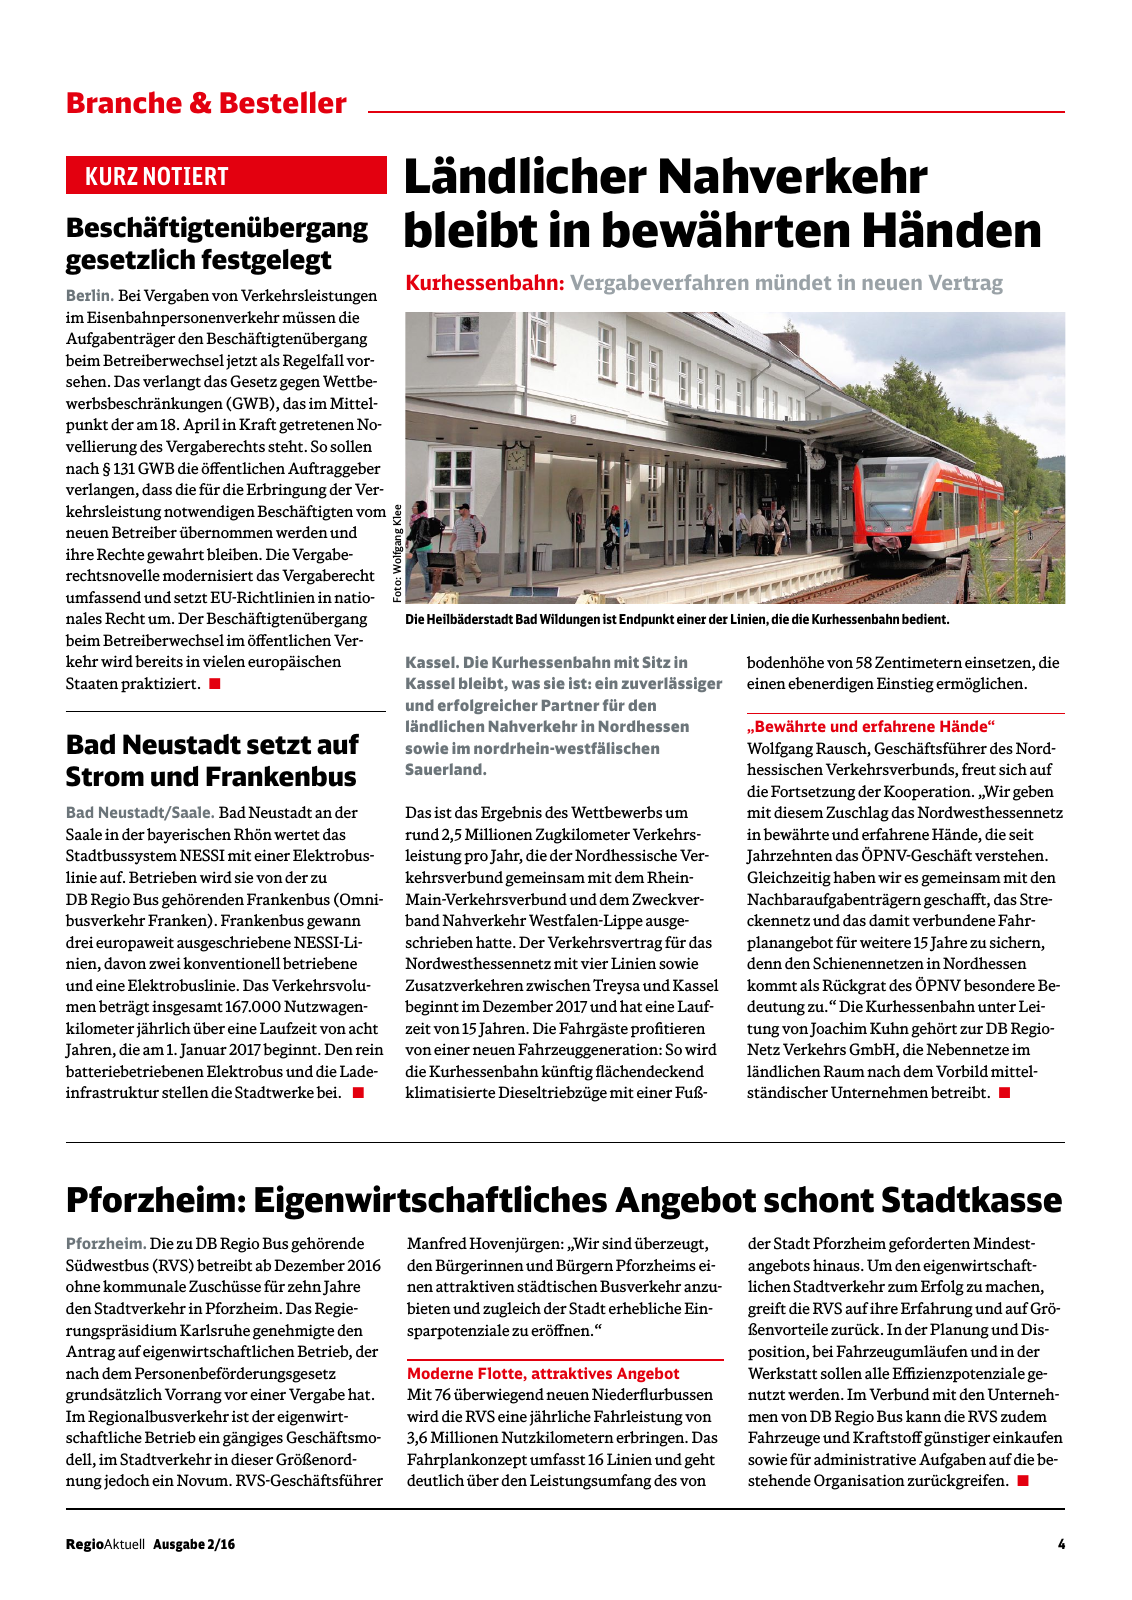 Vorschau RegioAktuell 2/2016 #01 Seite 4